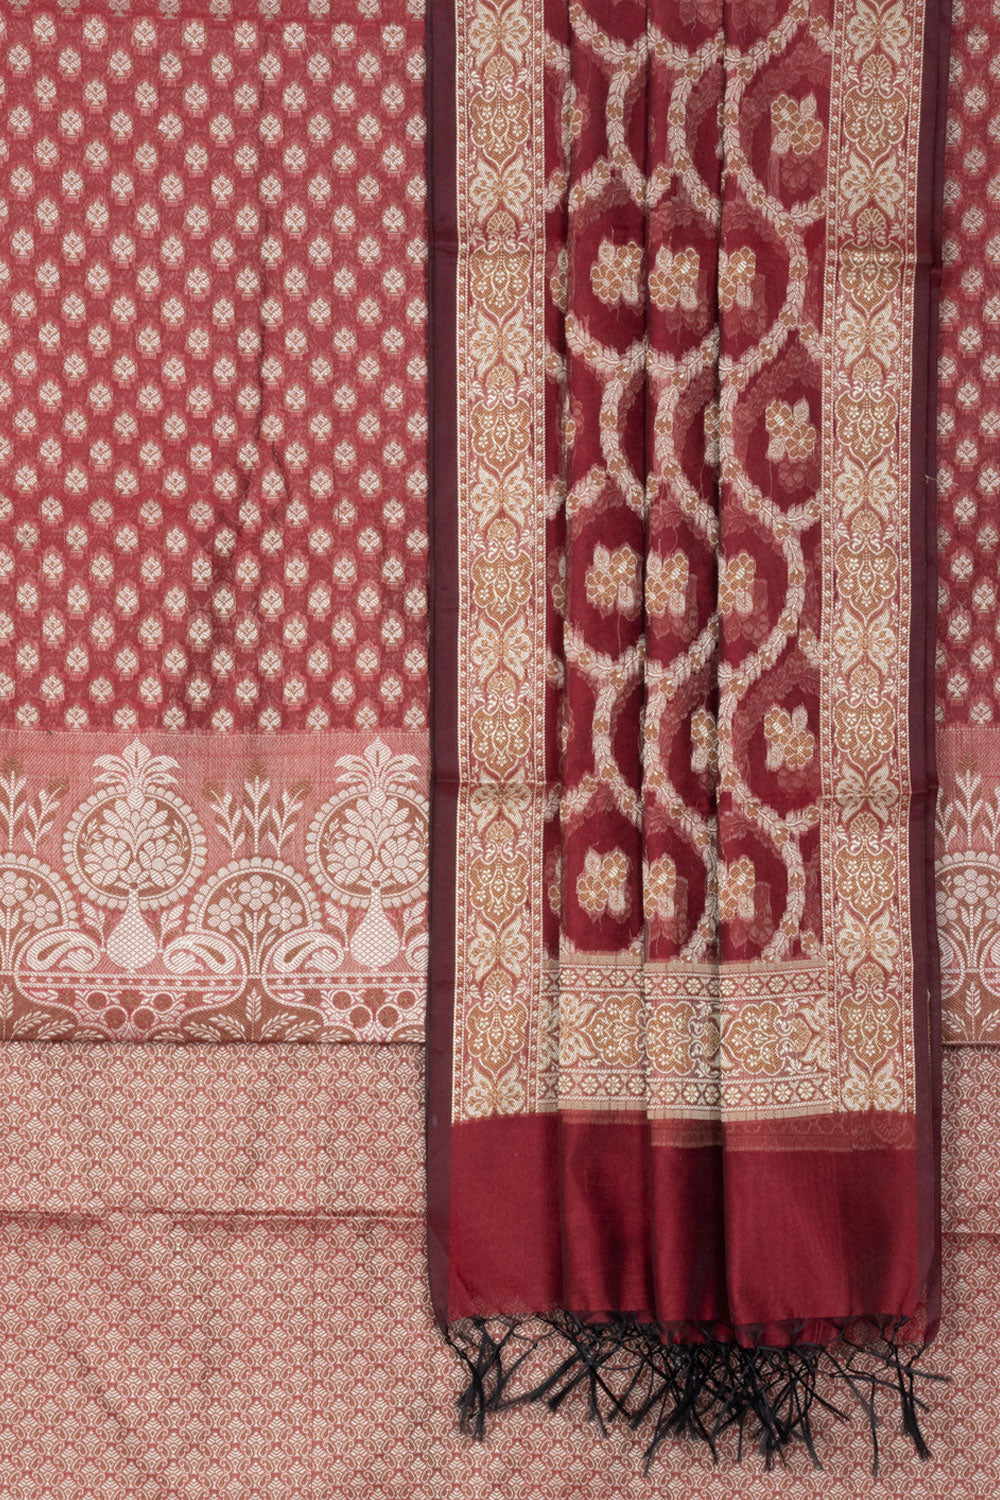 Banarasi Katrua Cotton 3-Piece Salwar Suit Material with Floral Motifs and tassels in Dupatta